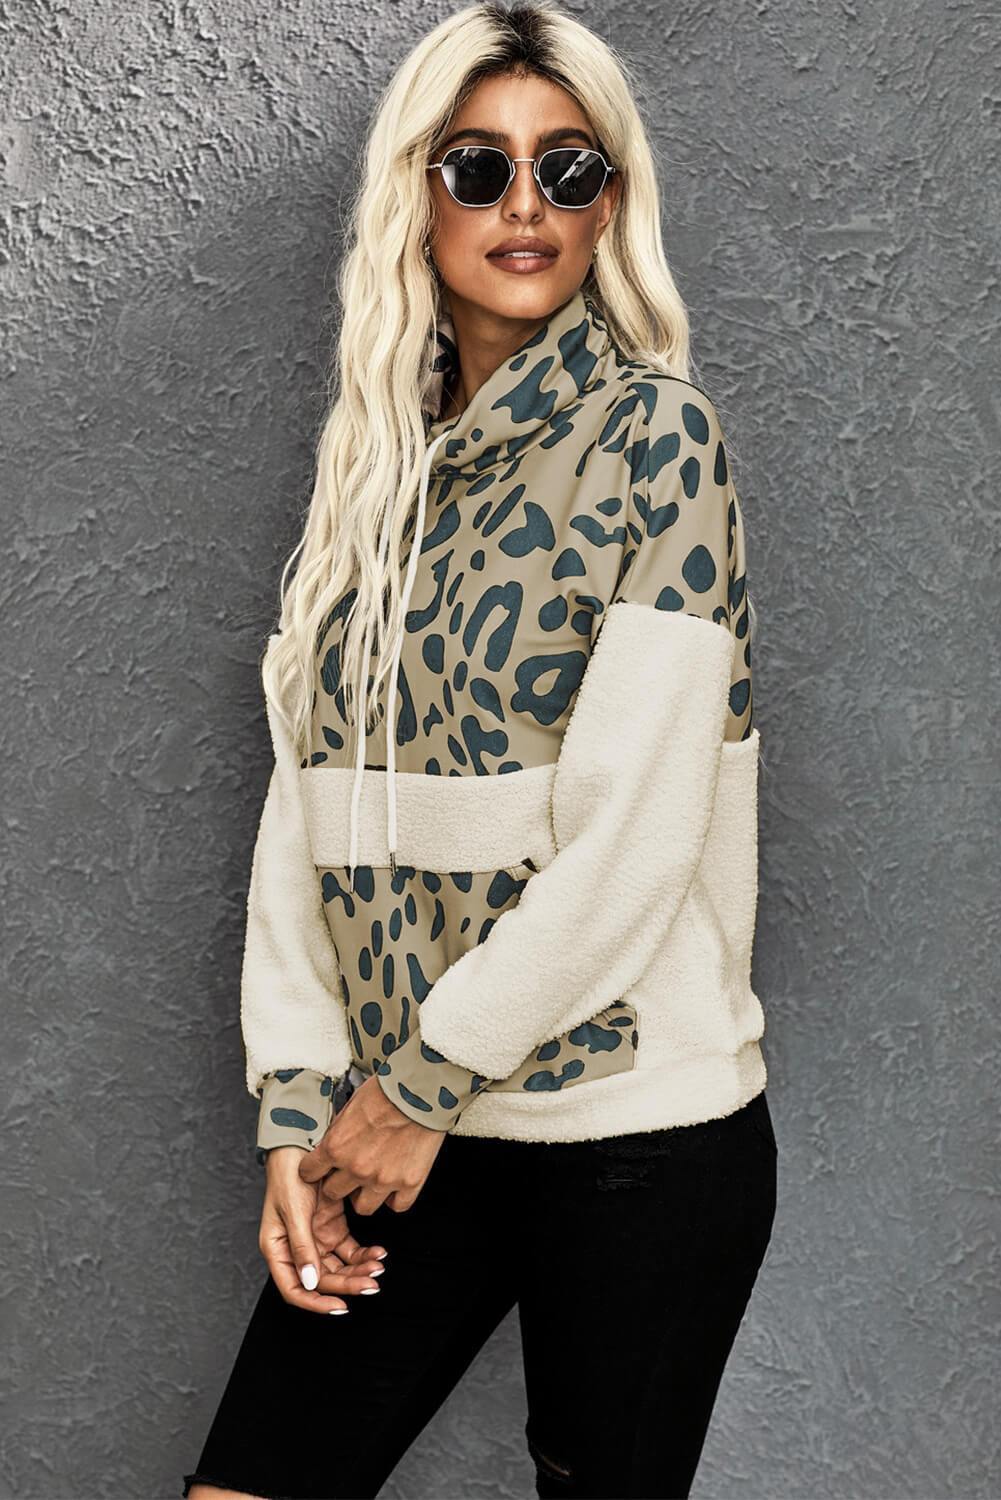 Leopard Print Sweatshirt - L & M Kee, LLC